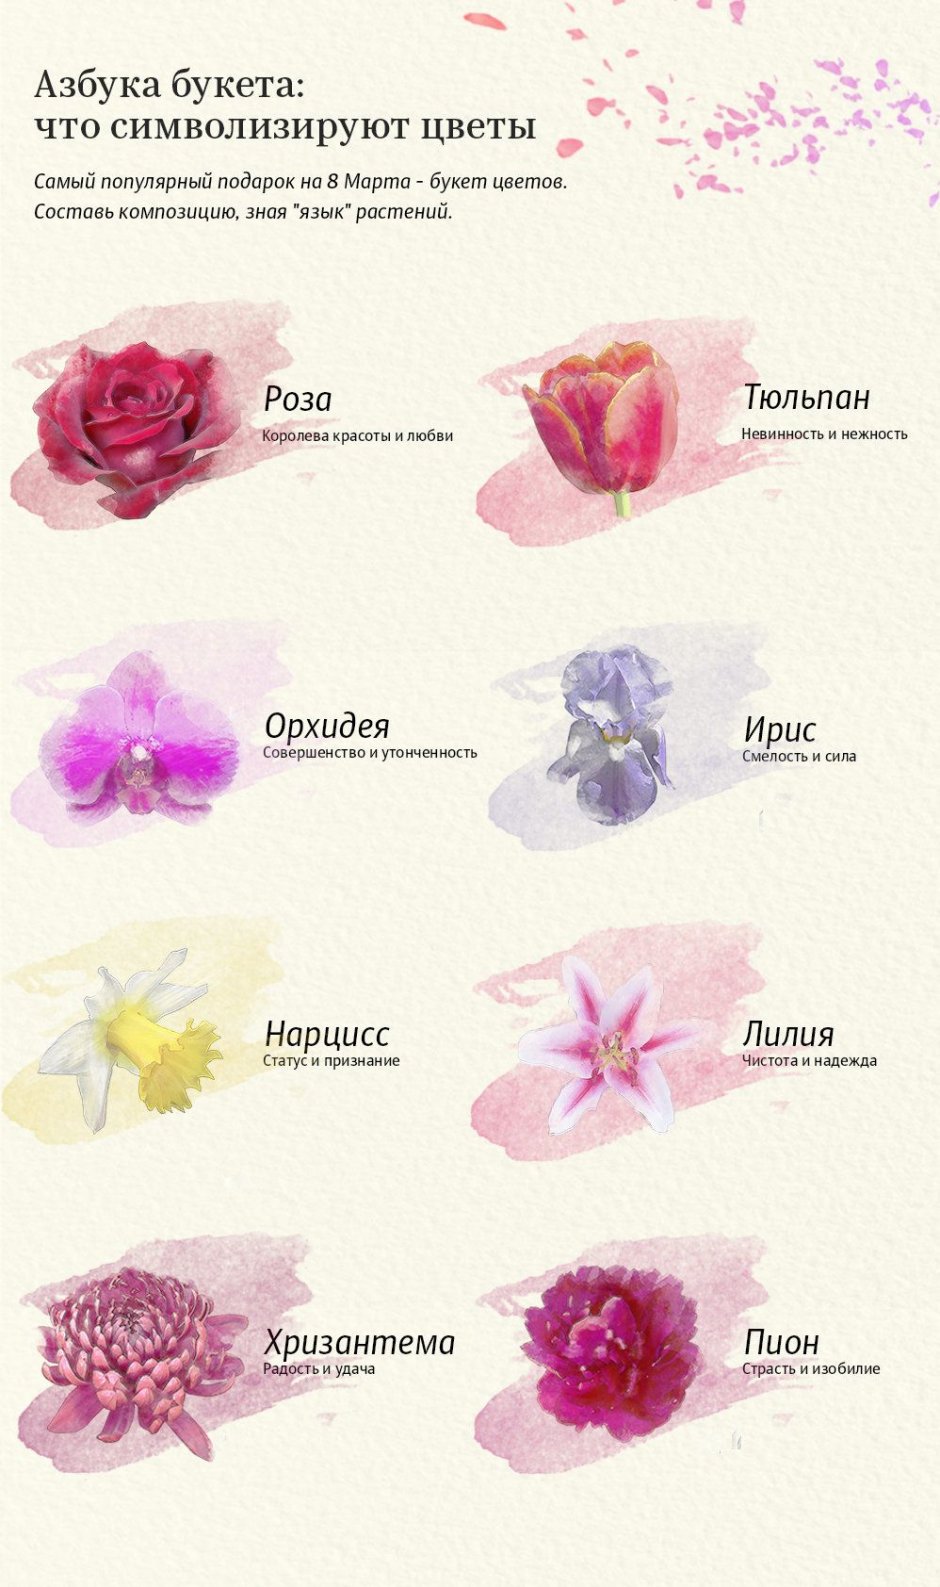 Какие цветы что символизируют